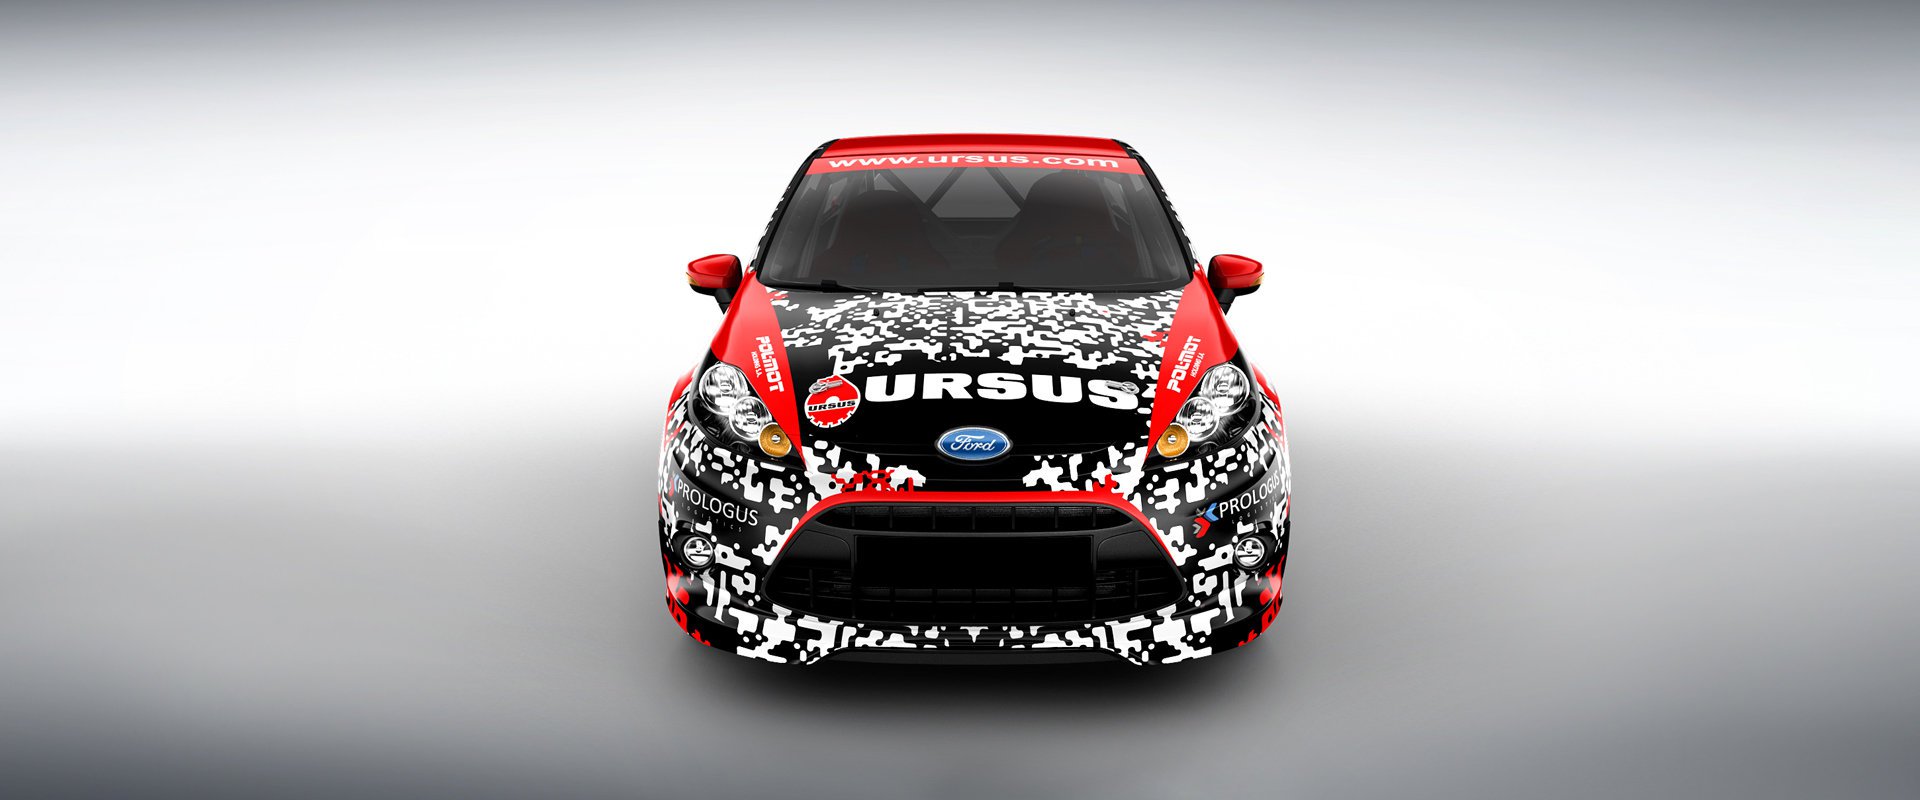 Ursus Rally Team #4